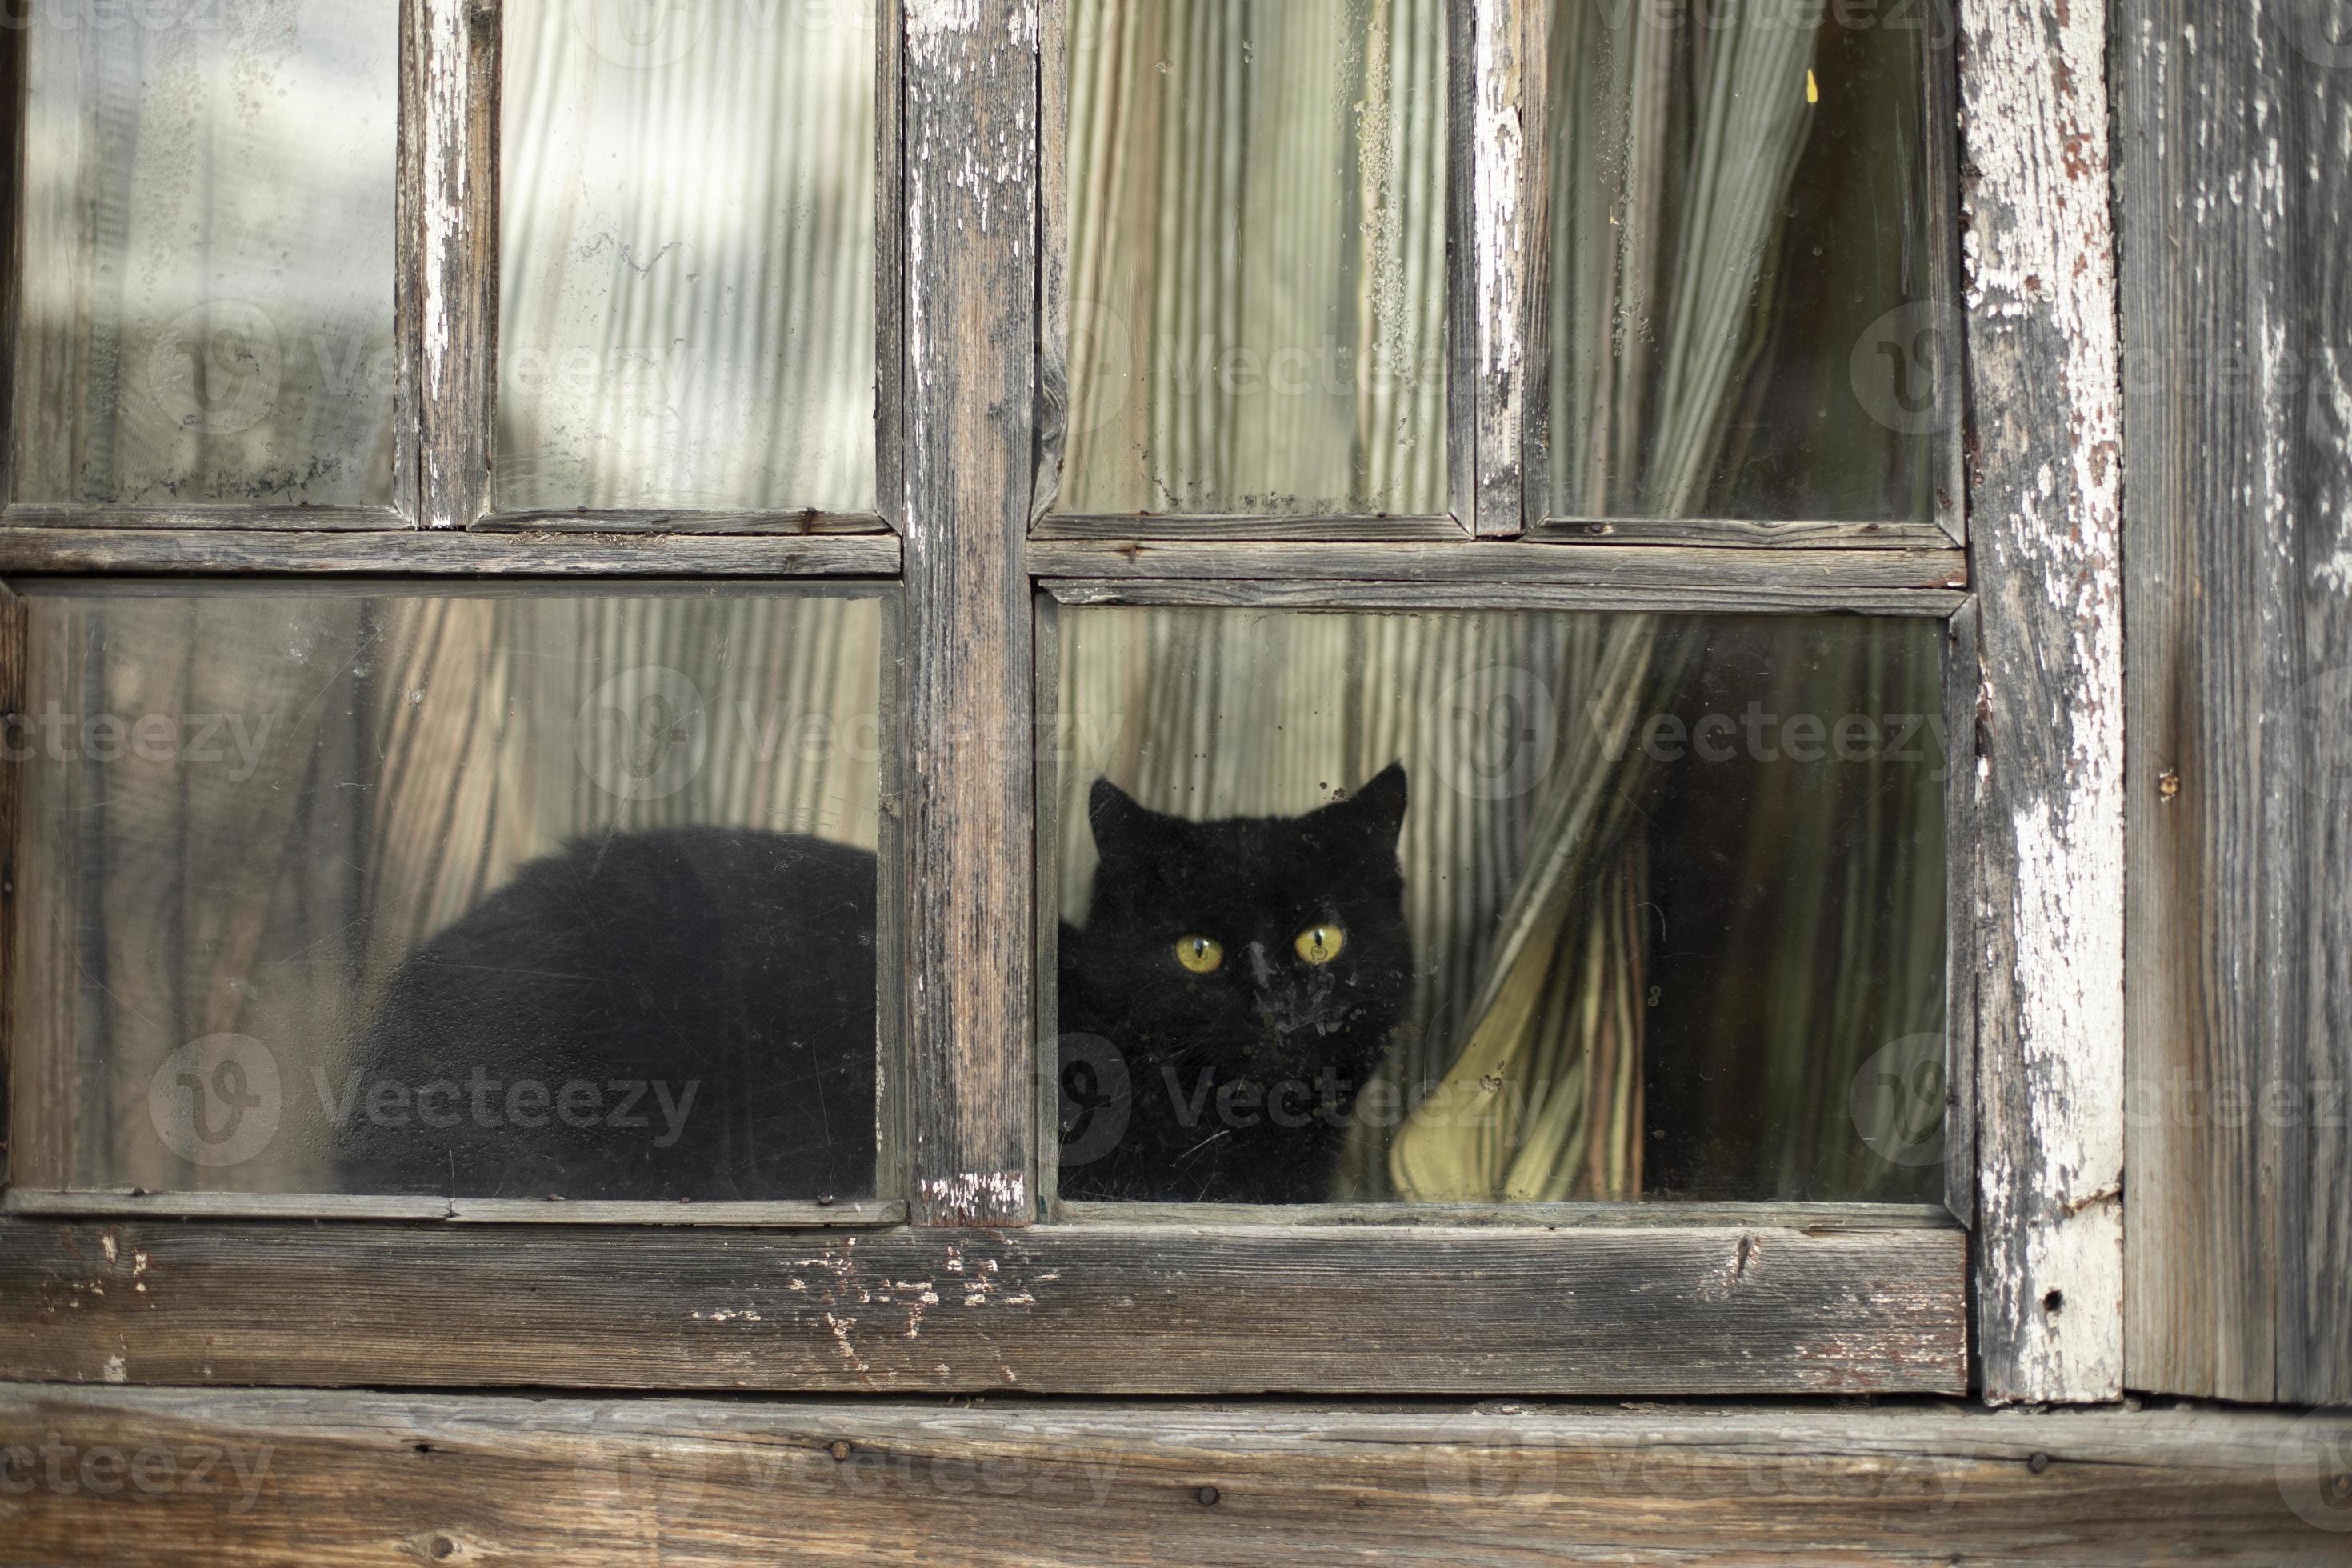 Hinter sich einer Gardine am geschlossen Fenster, lauert eine schwarze  Katze . Links am Bild ein kleiner Rest von einer grünen Hecke. - ein  lizenzfreies Stock Foto von Photocase